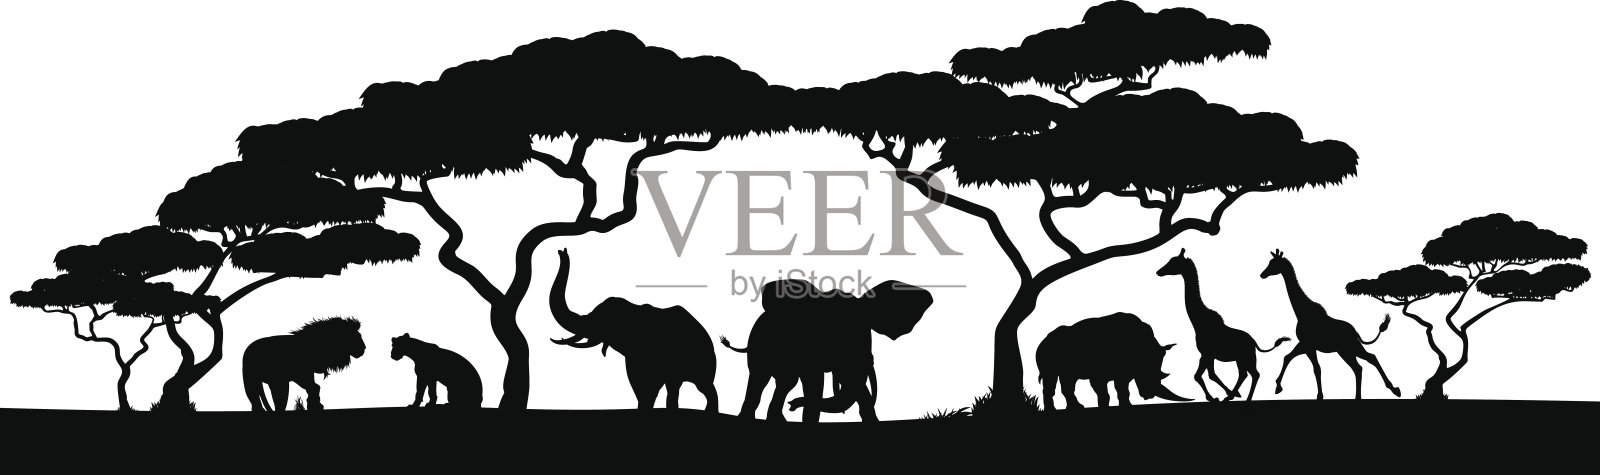 剪影非洲野生动物园动物景观景色插画图片素材